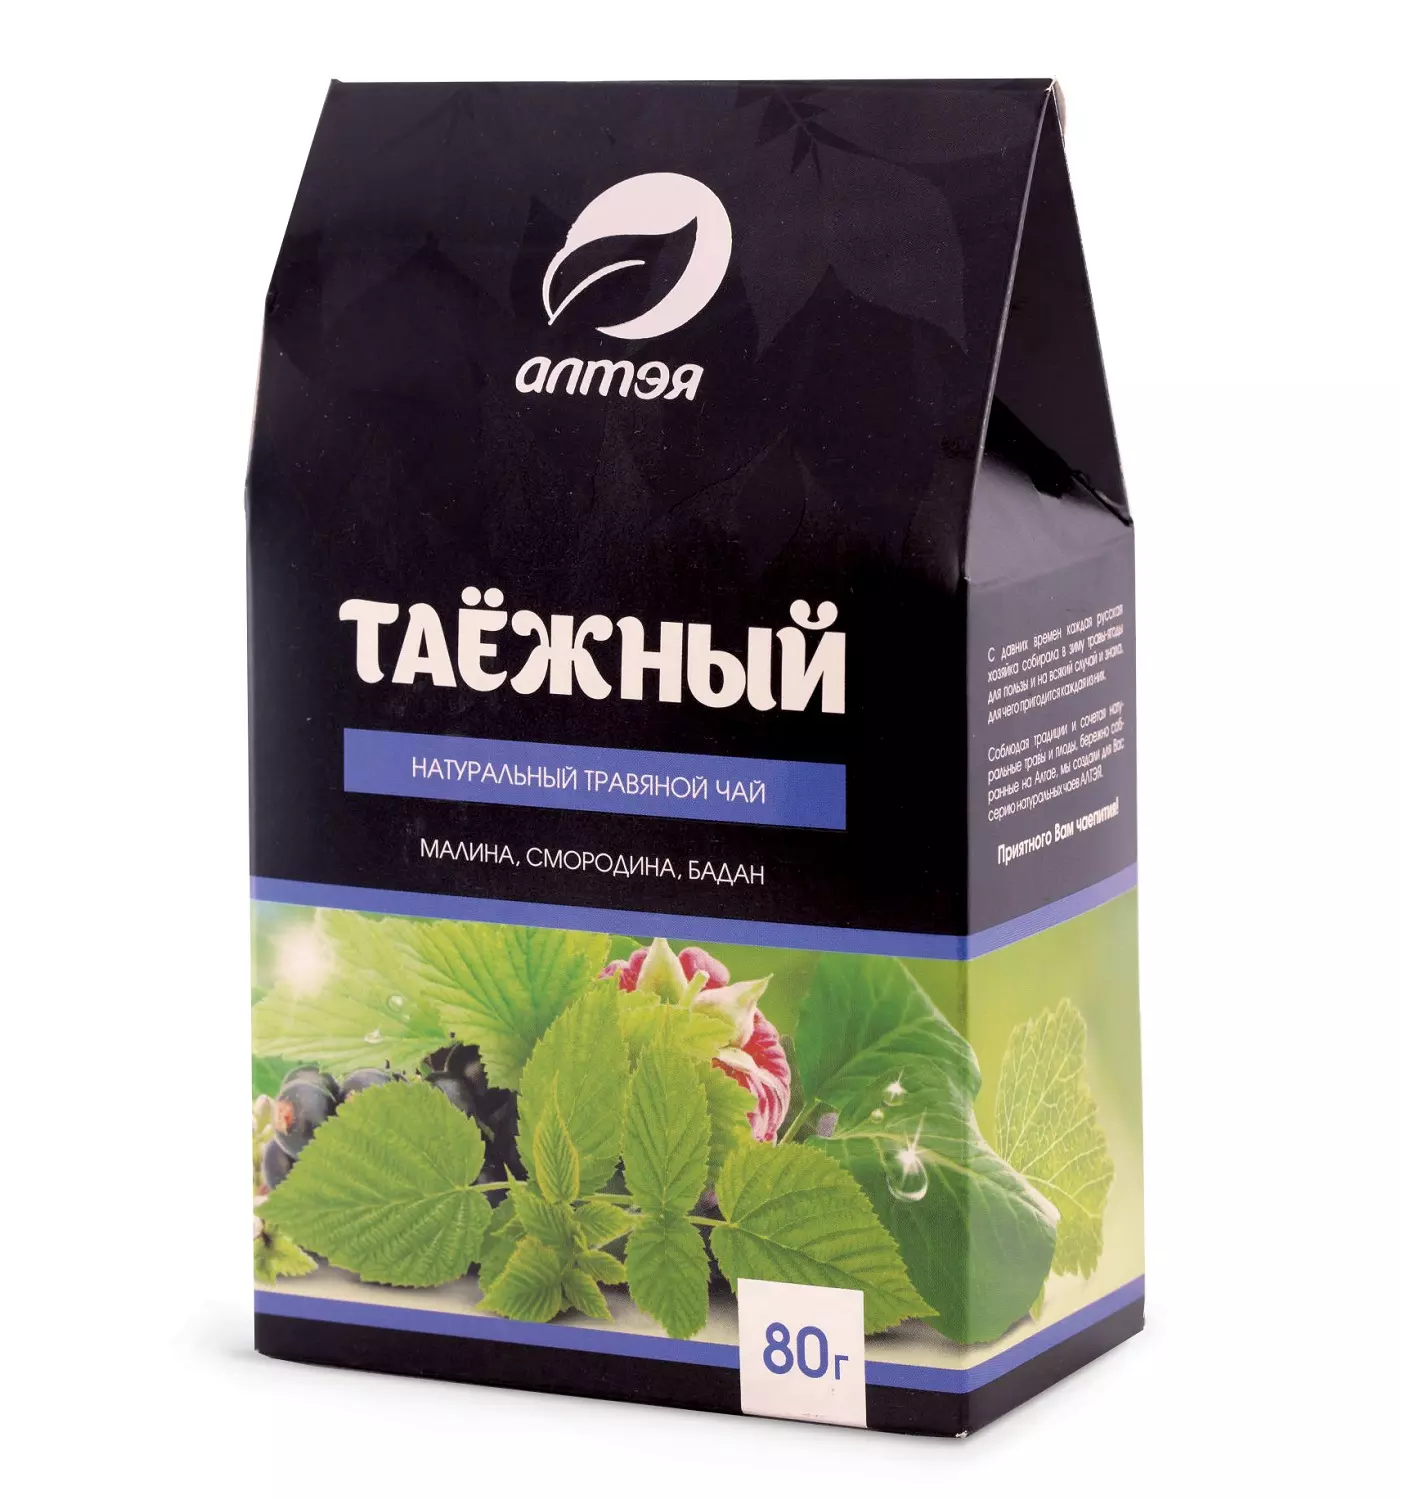 Натуральный травяной чай "Таежный", 80 г